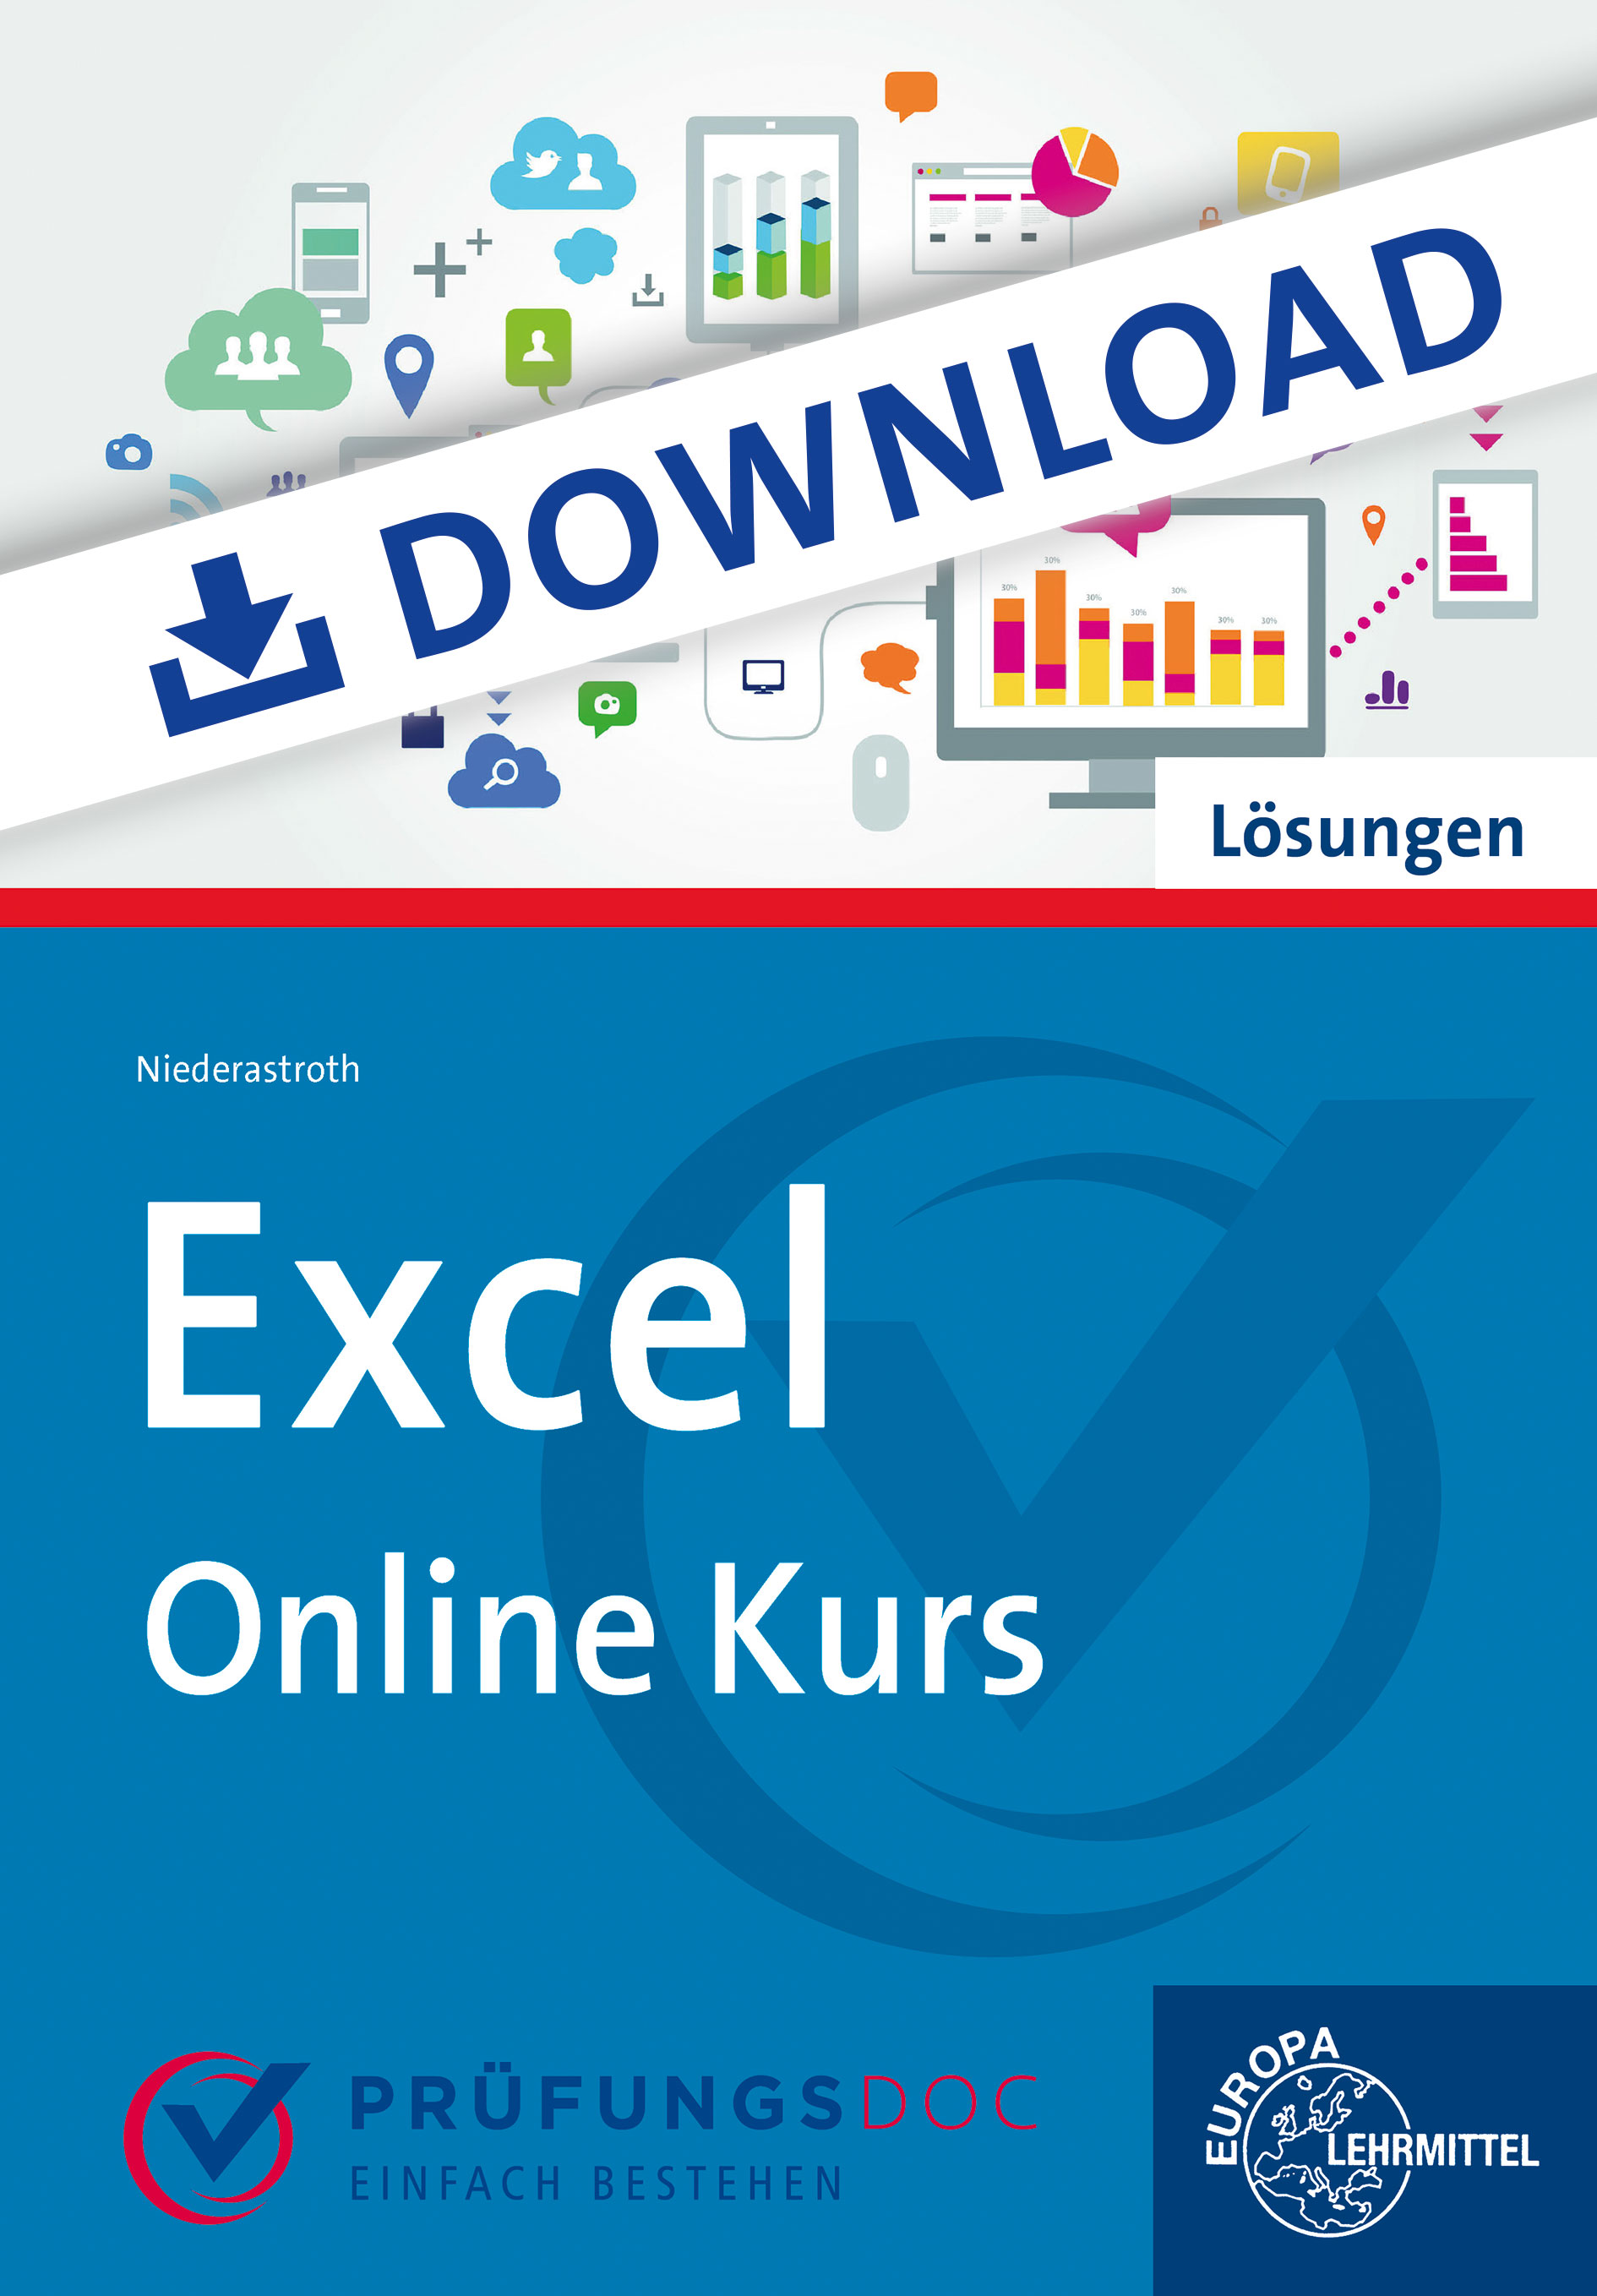 Lösungen zum Excel -Online-Kurs auf www.pruefungsdoc.de